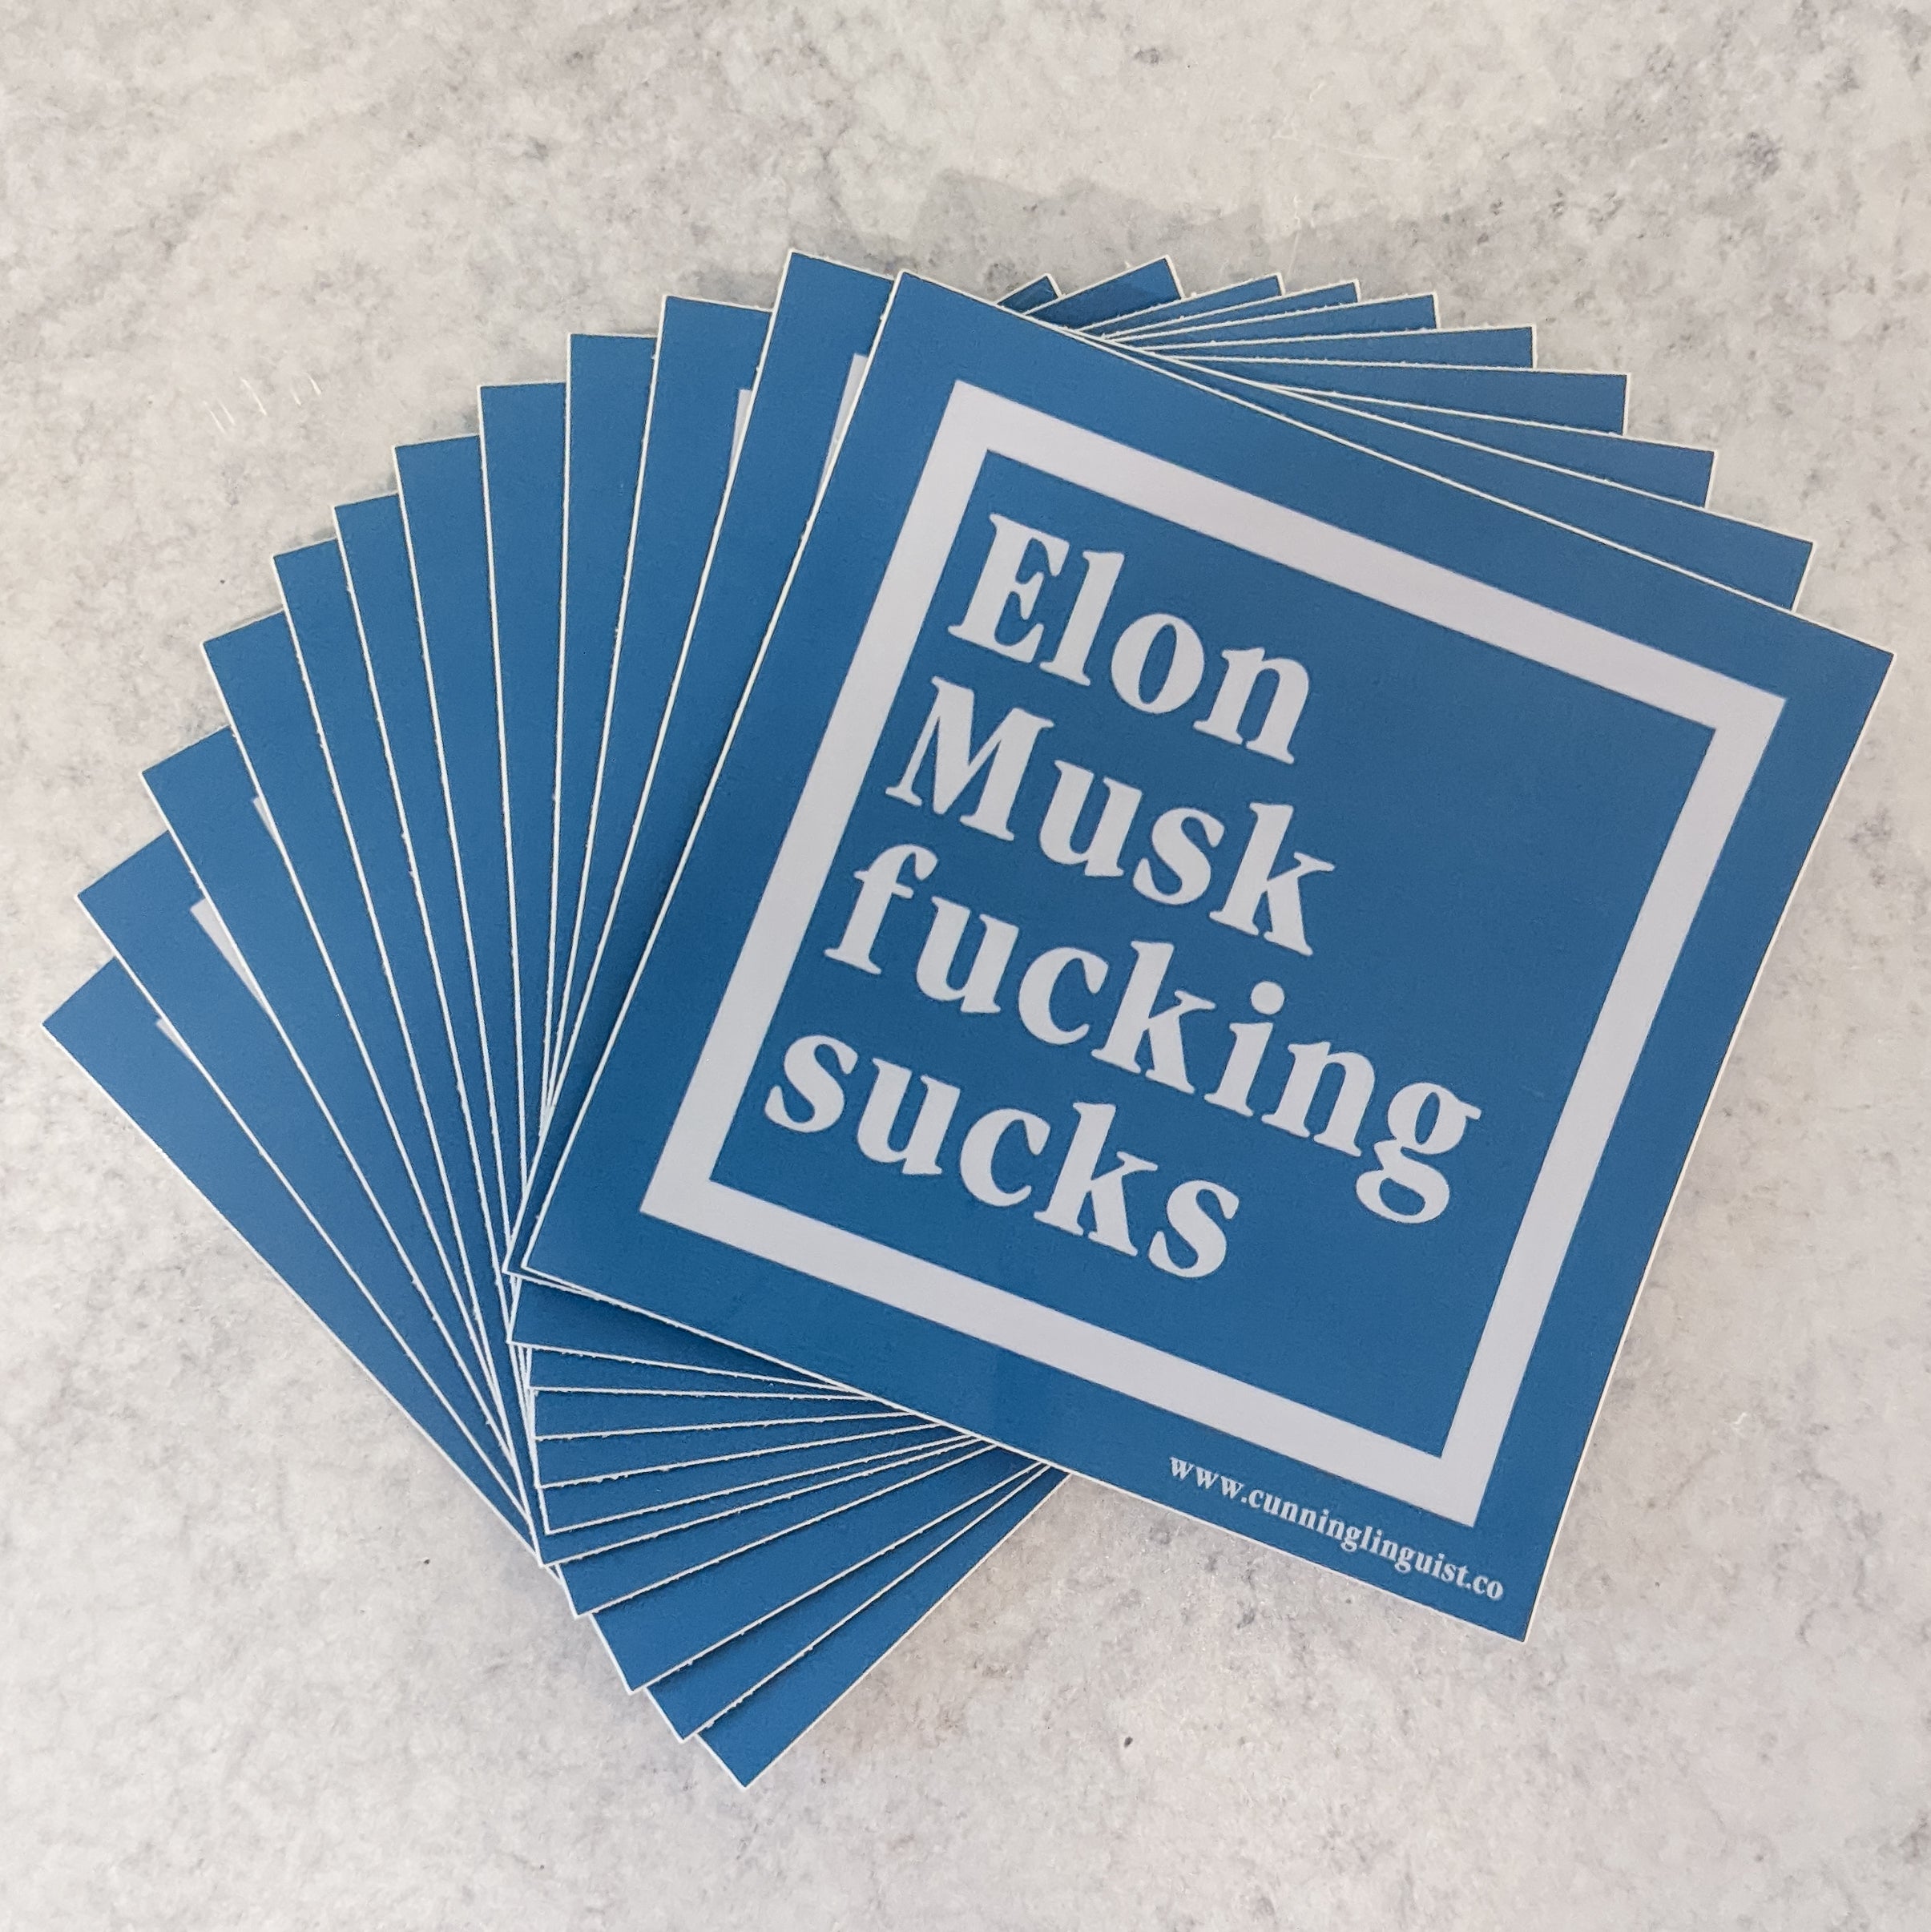 Elon Sucks sticker